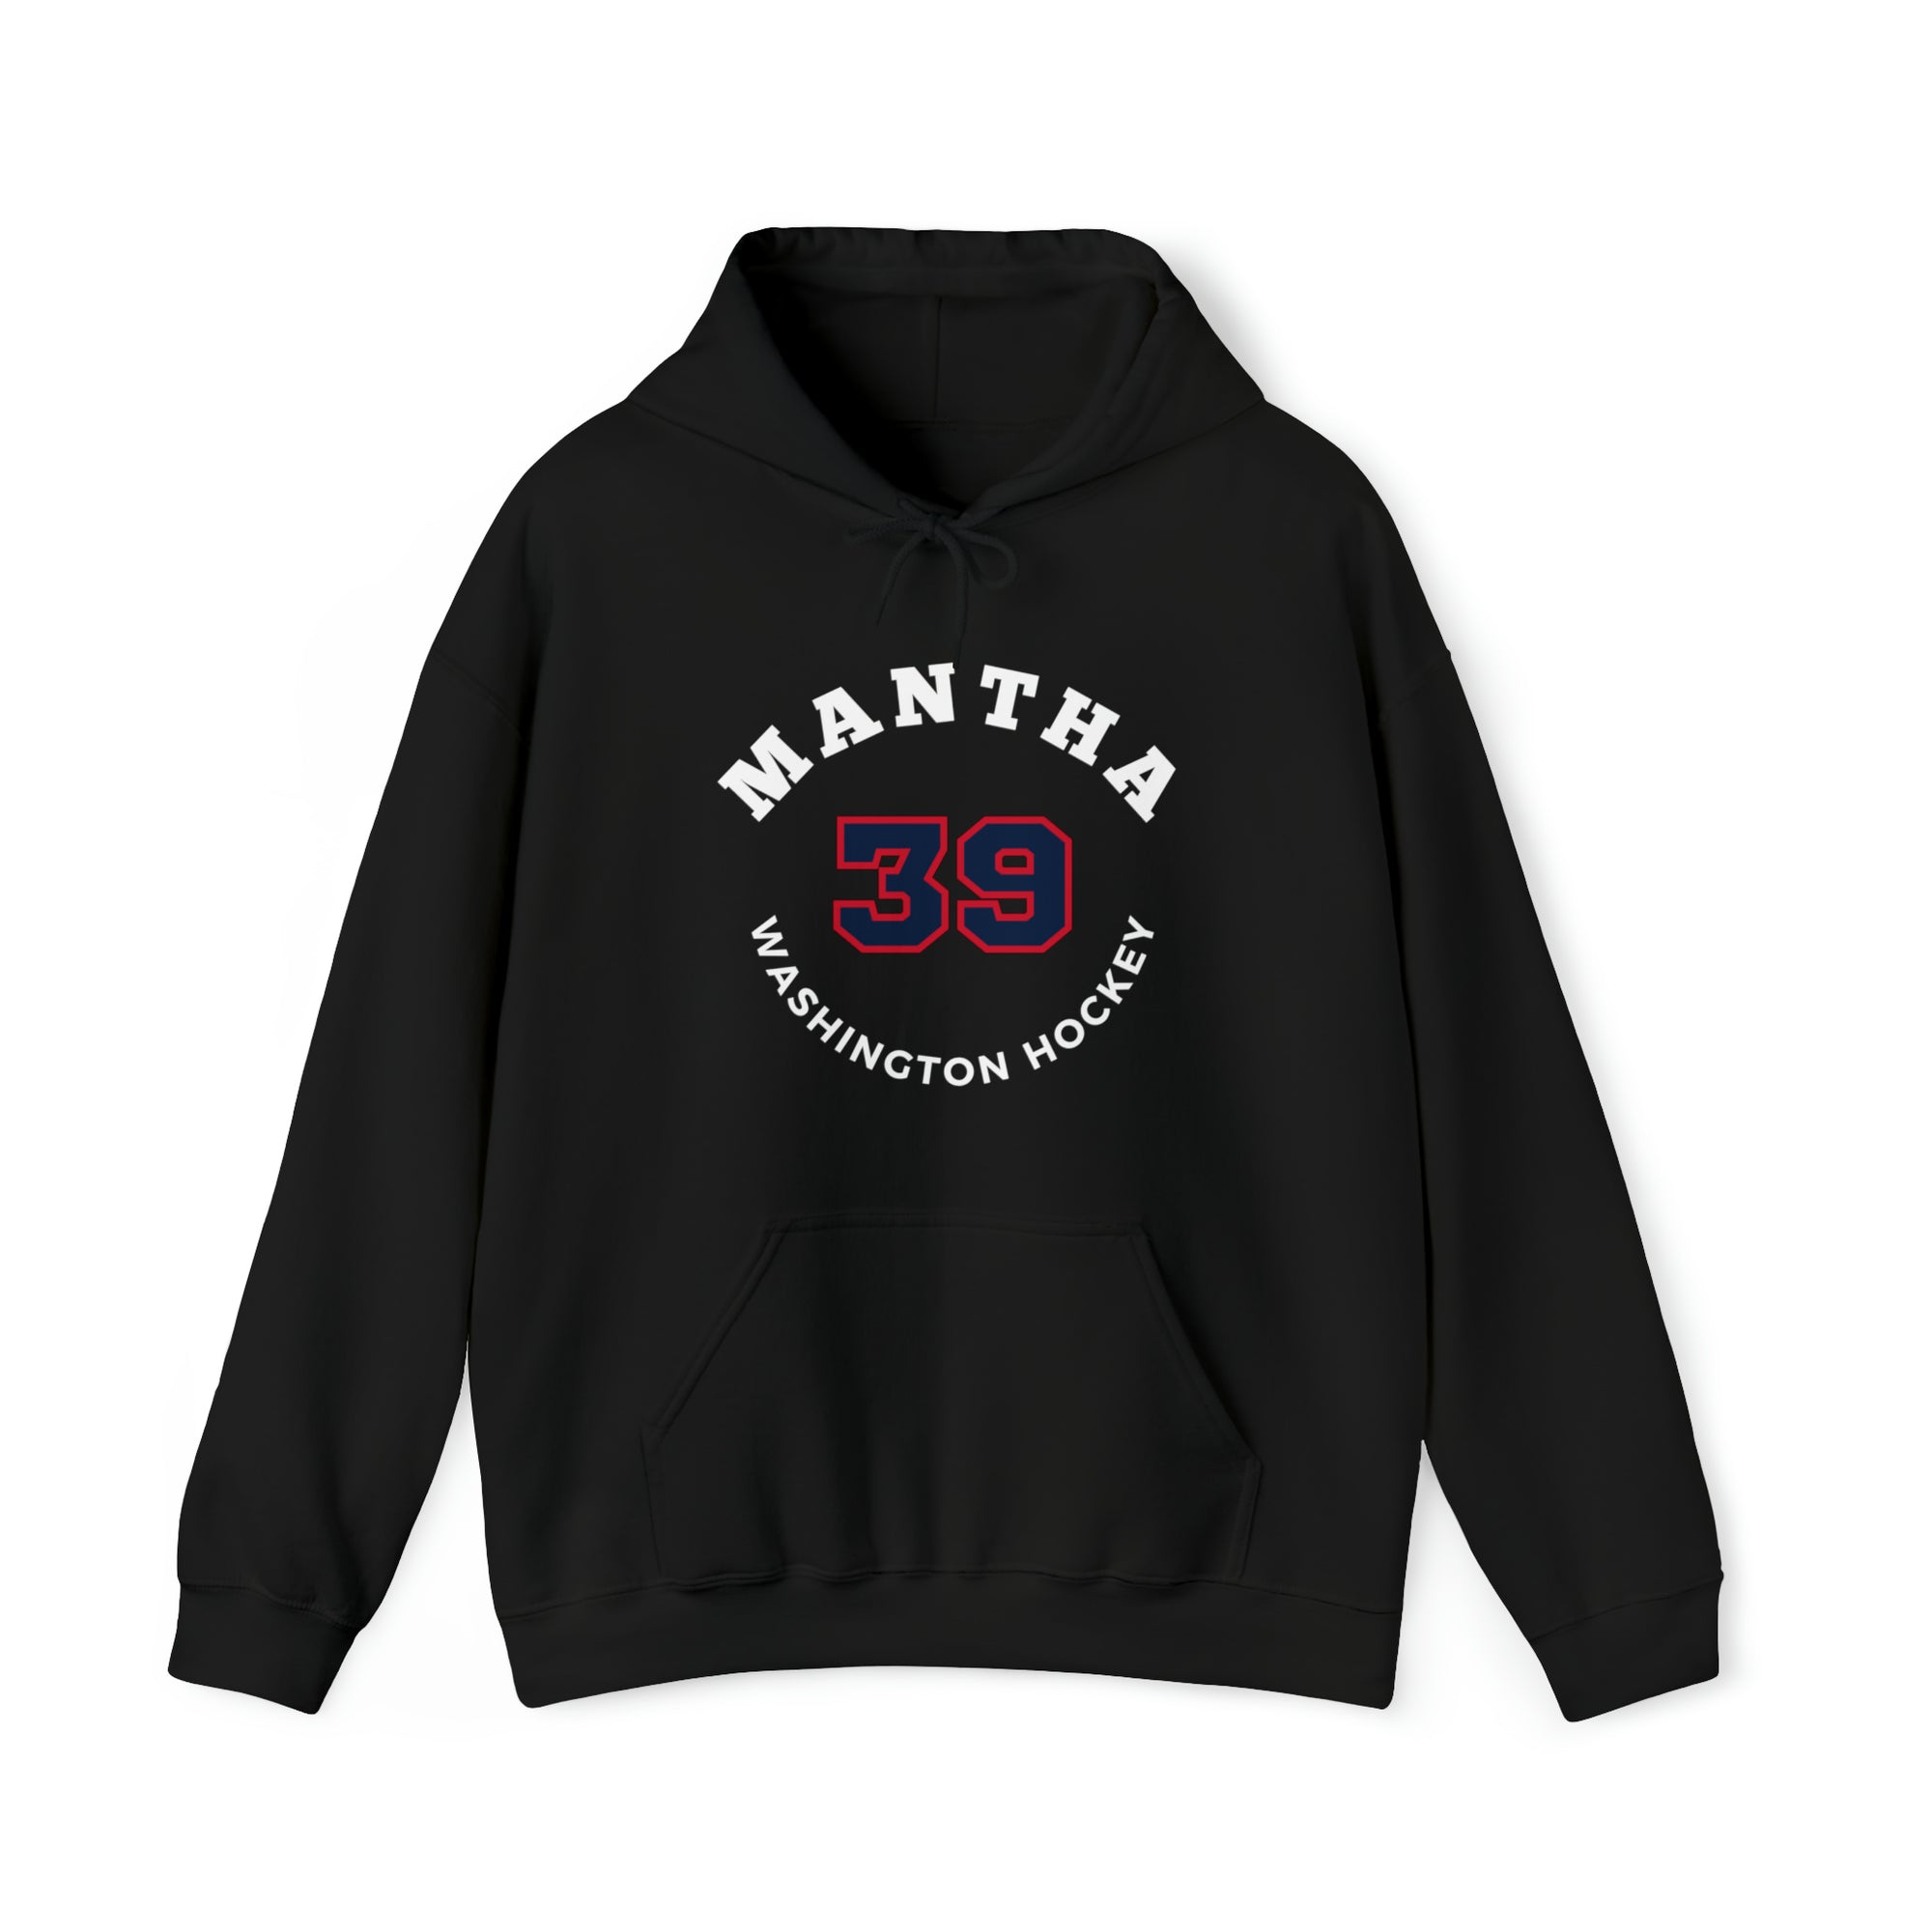 Mantha 39 Washington Hockey Number Arch Design Unisex Hooded Sweatshirt